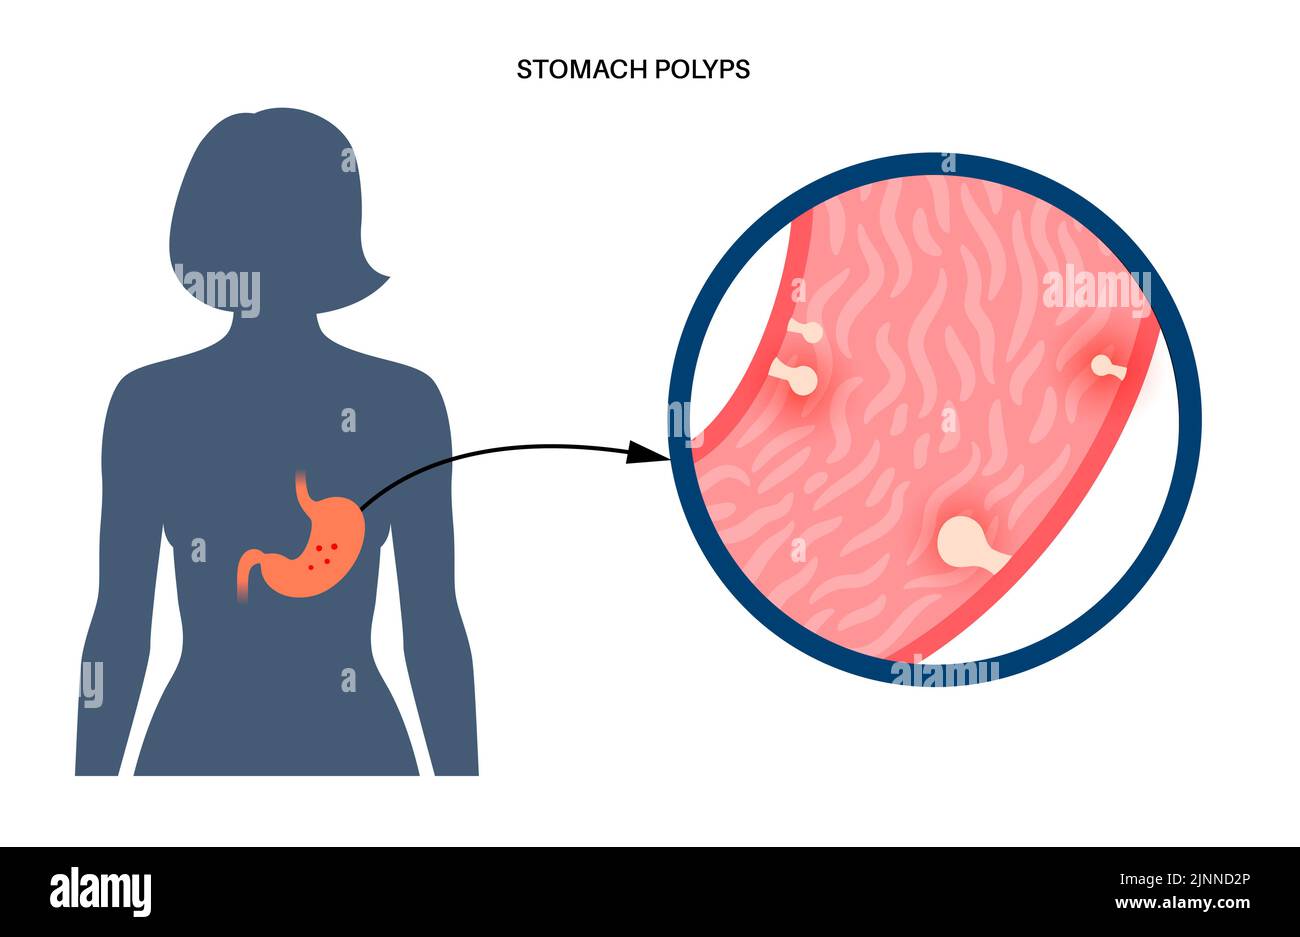 Pólipos estomacales, ilustración. Foto de stock